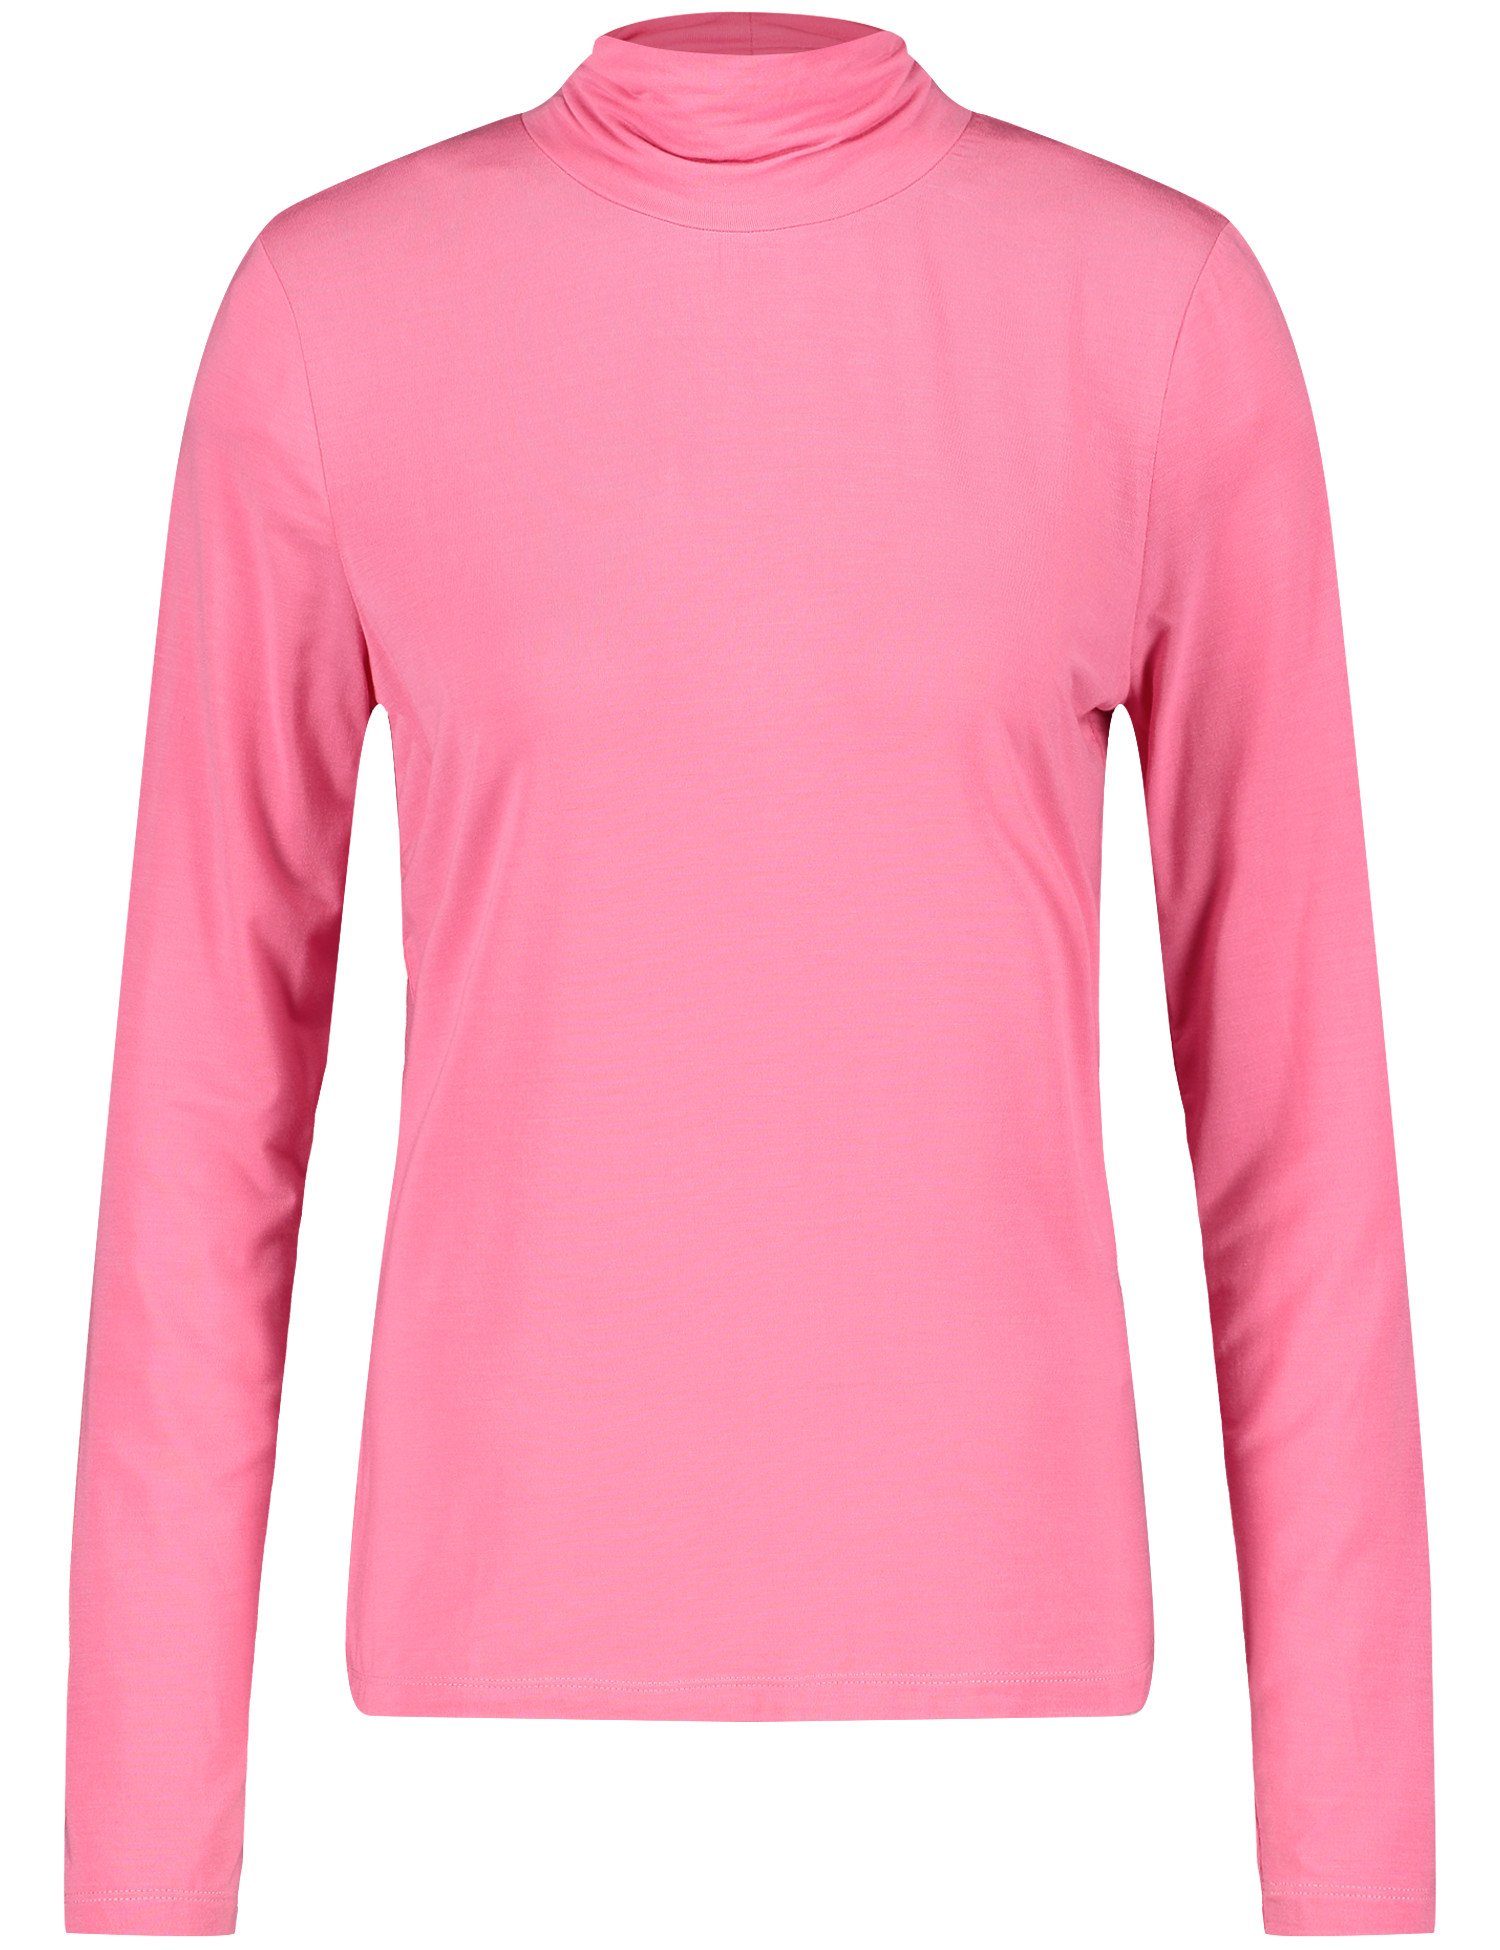 WEBER ROSE 30894 GERRY T-Shirt PINK